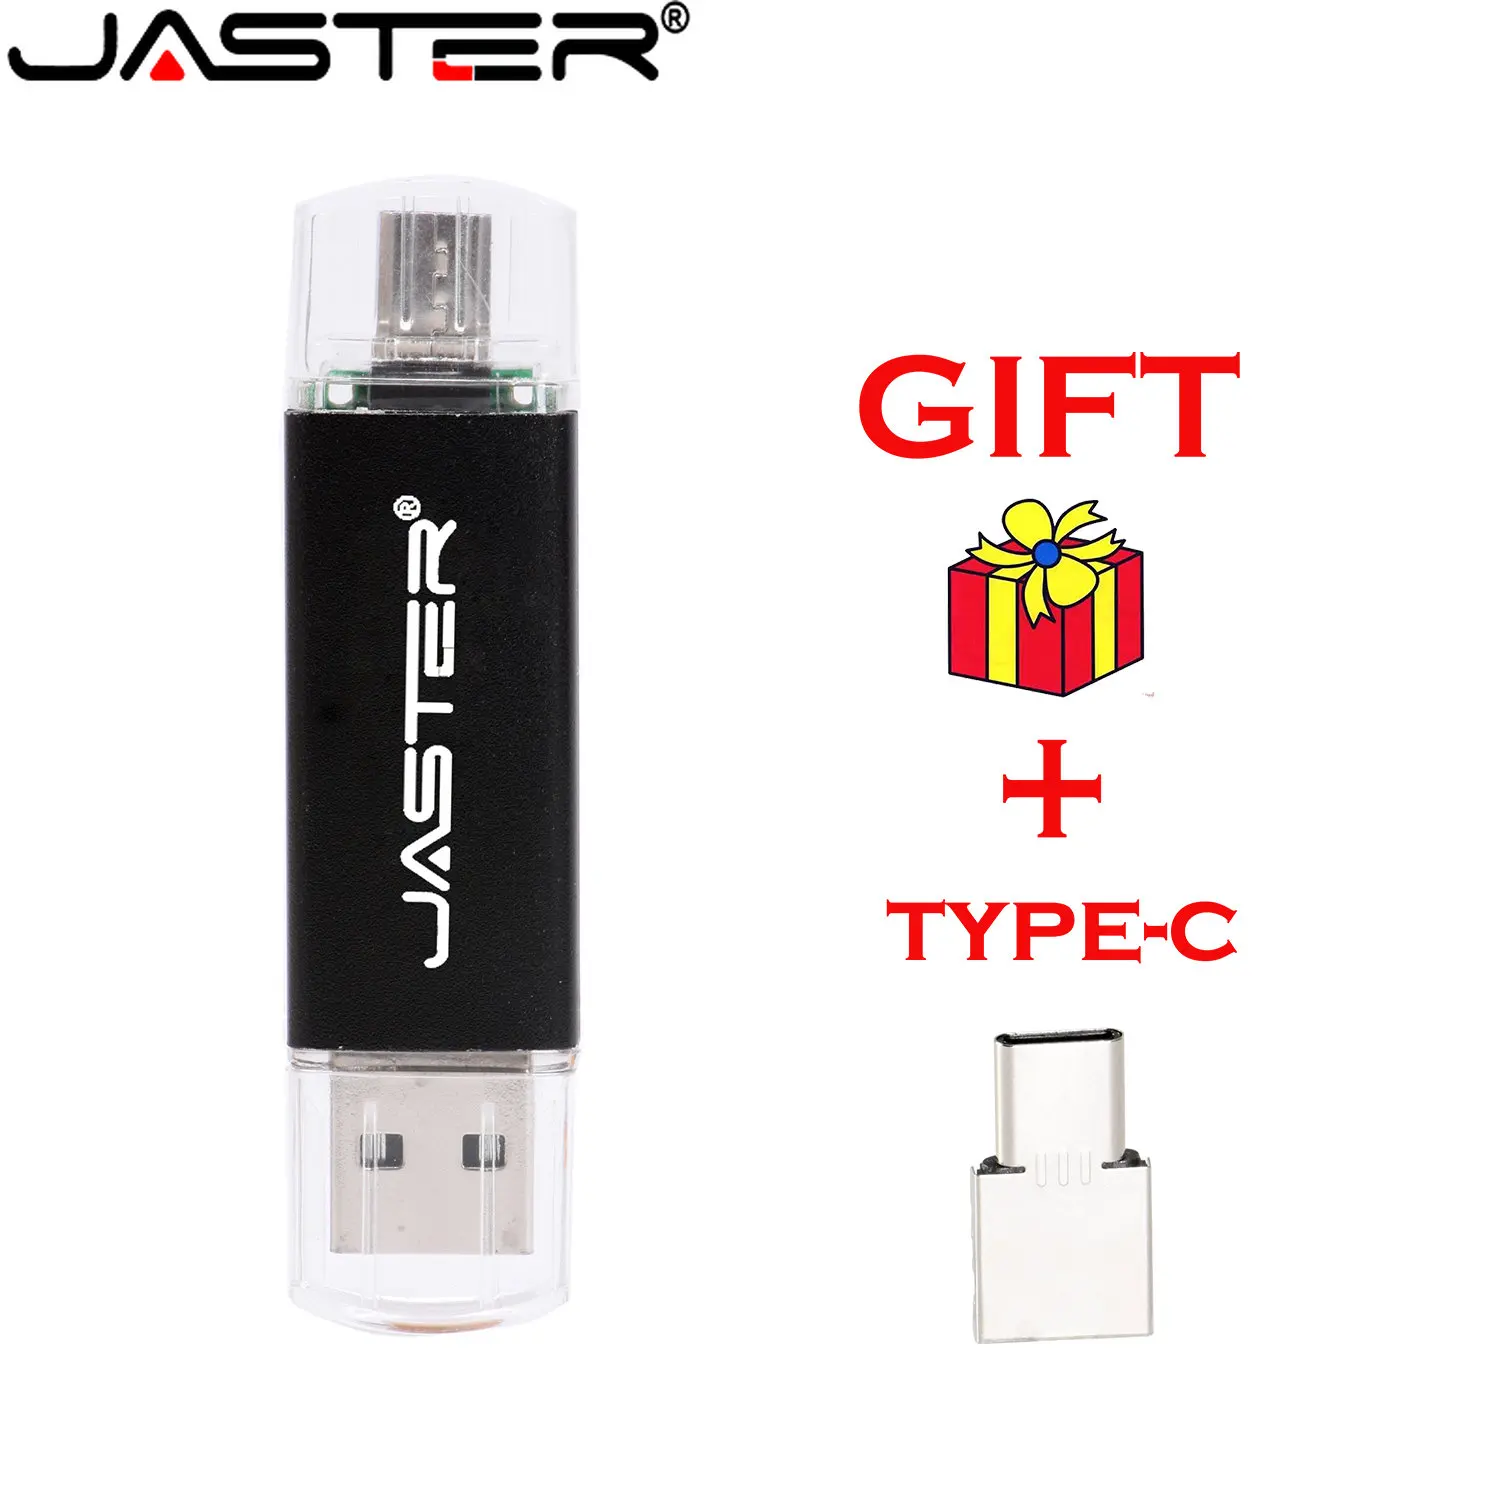 

JASTER Black OTG Usb 2.0 Flash Drive 64GB Pendrive 4GB Free Gift 8GB U Disk 16GB Pen Drives 32GB Memory Stick External Storage